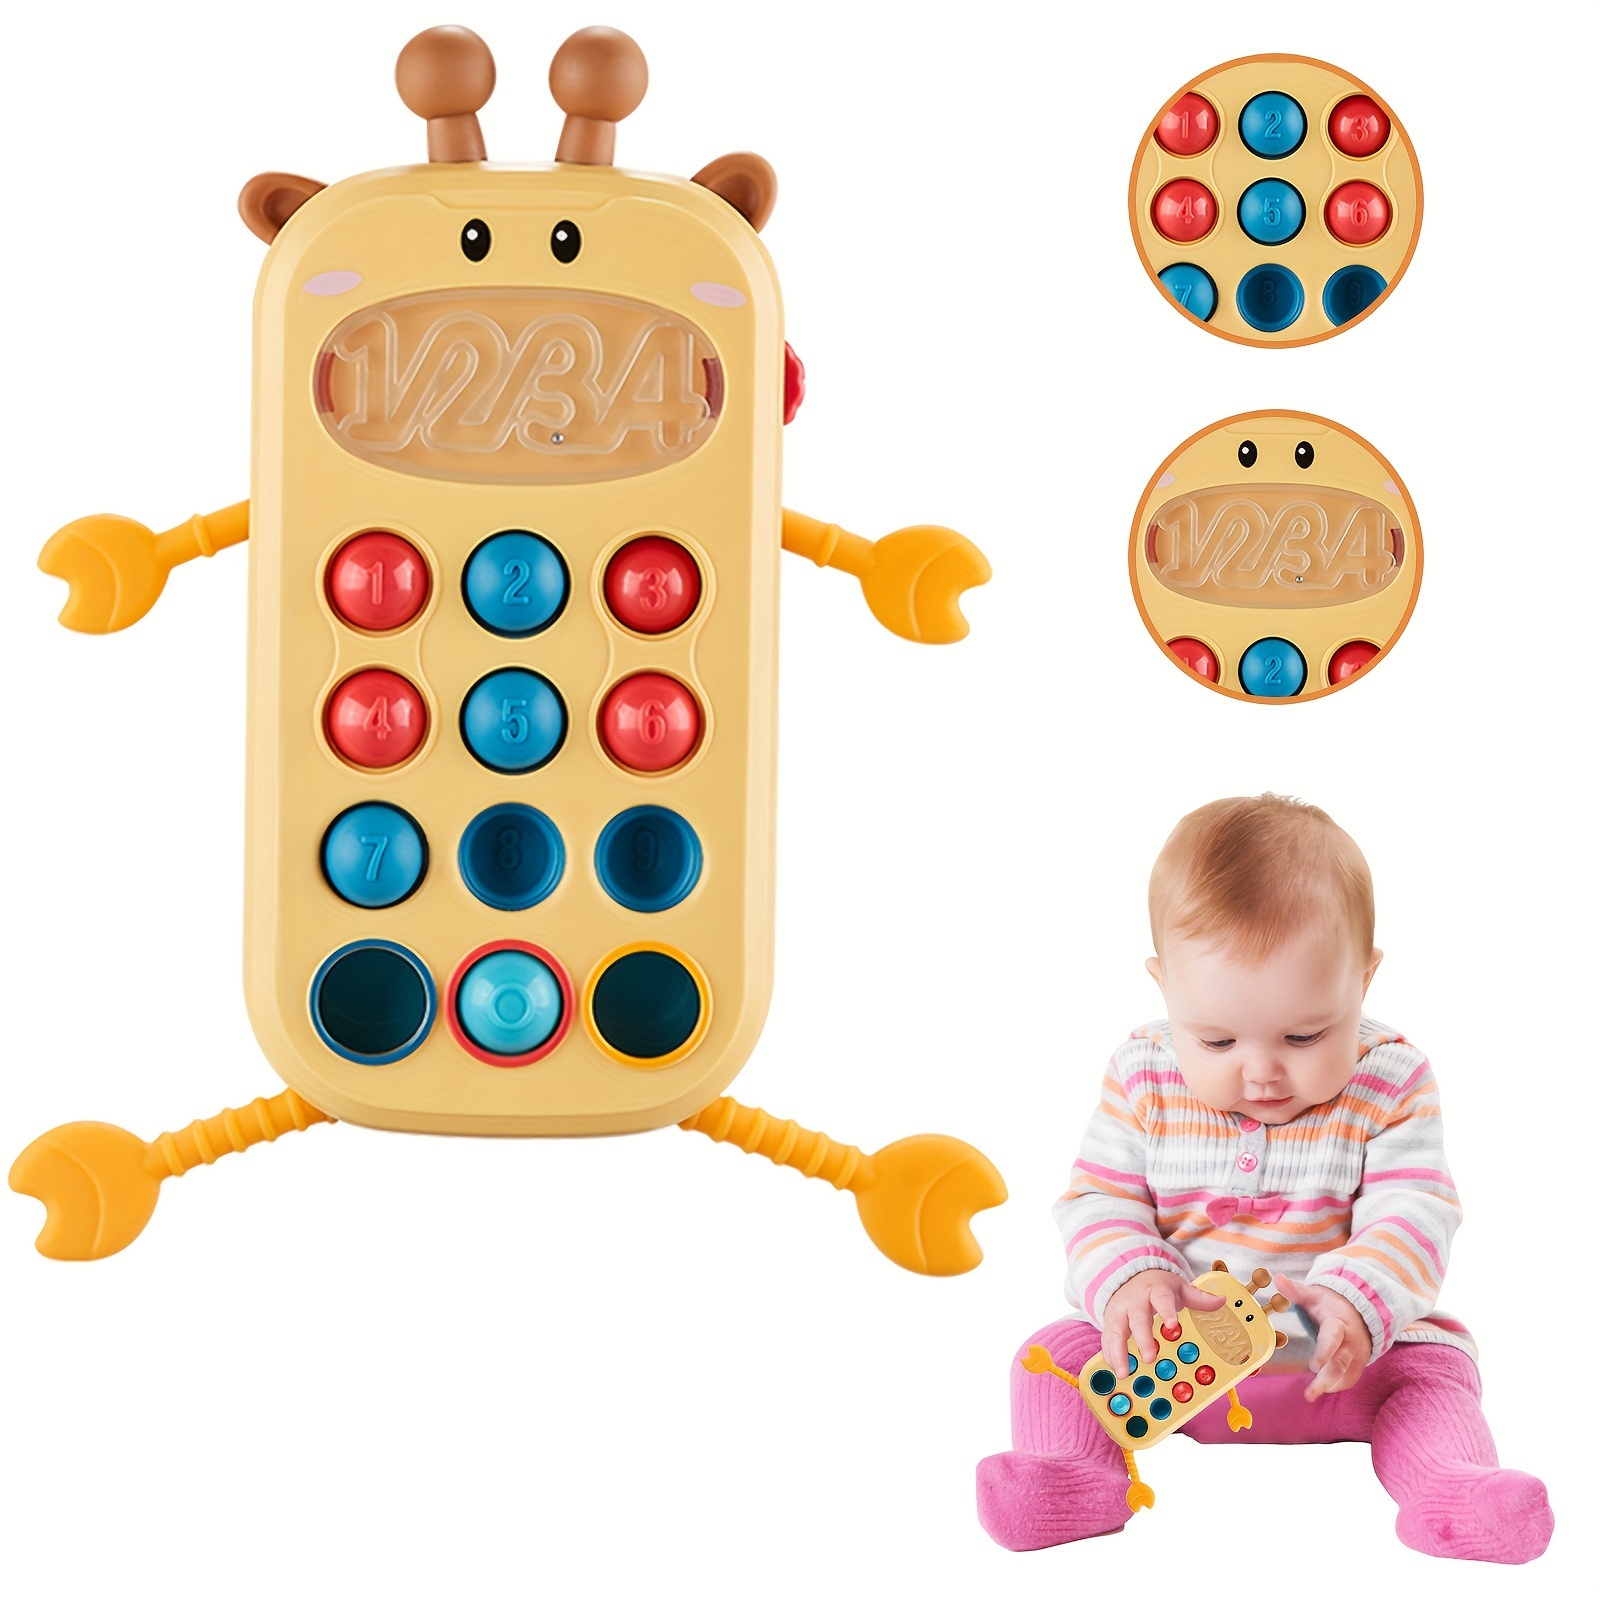 Juguetes Montessori para bebés y niños de 1 y 2 años